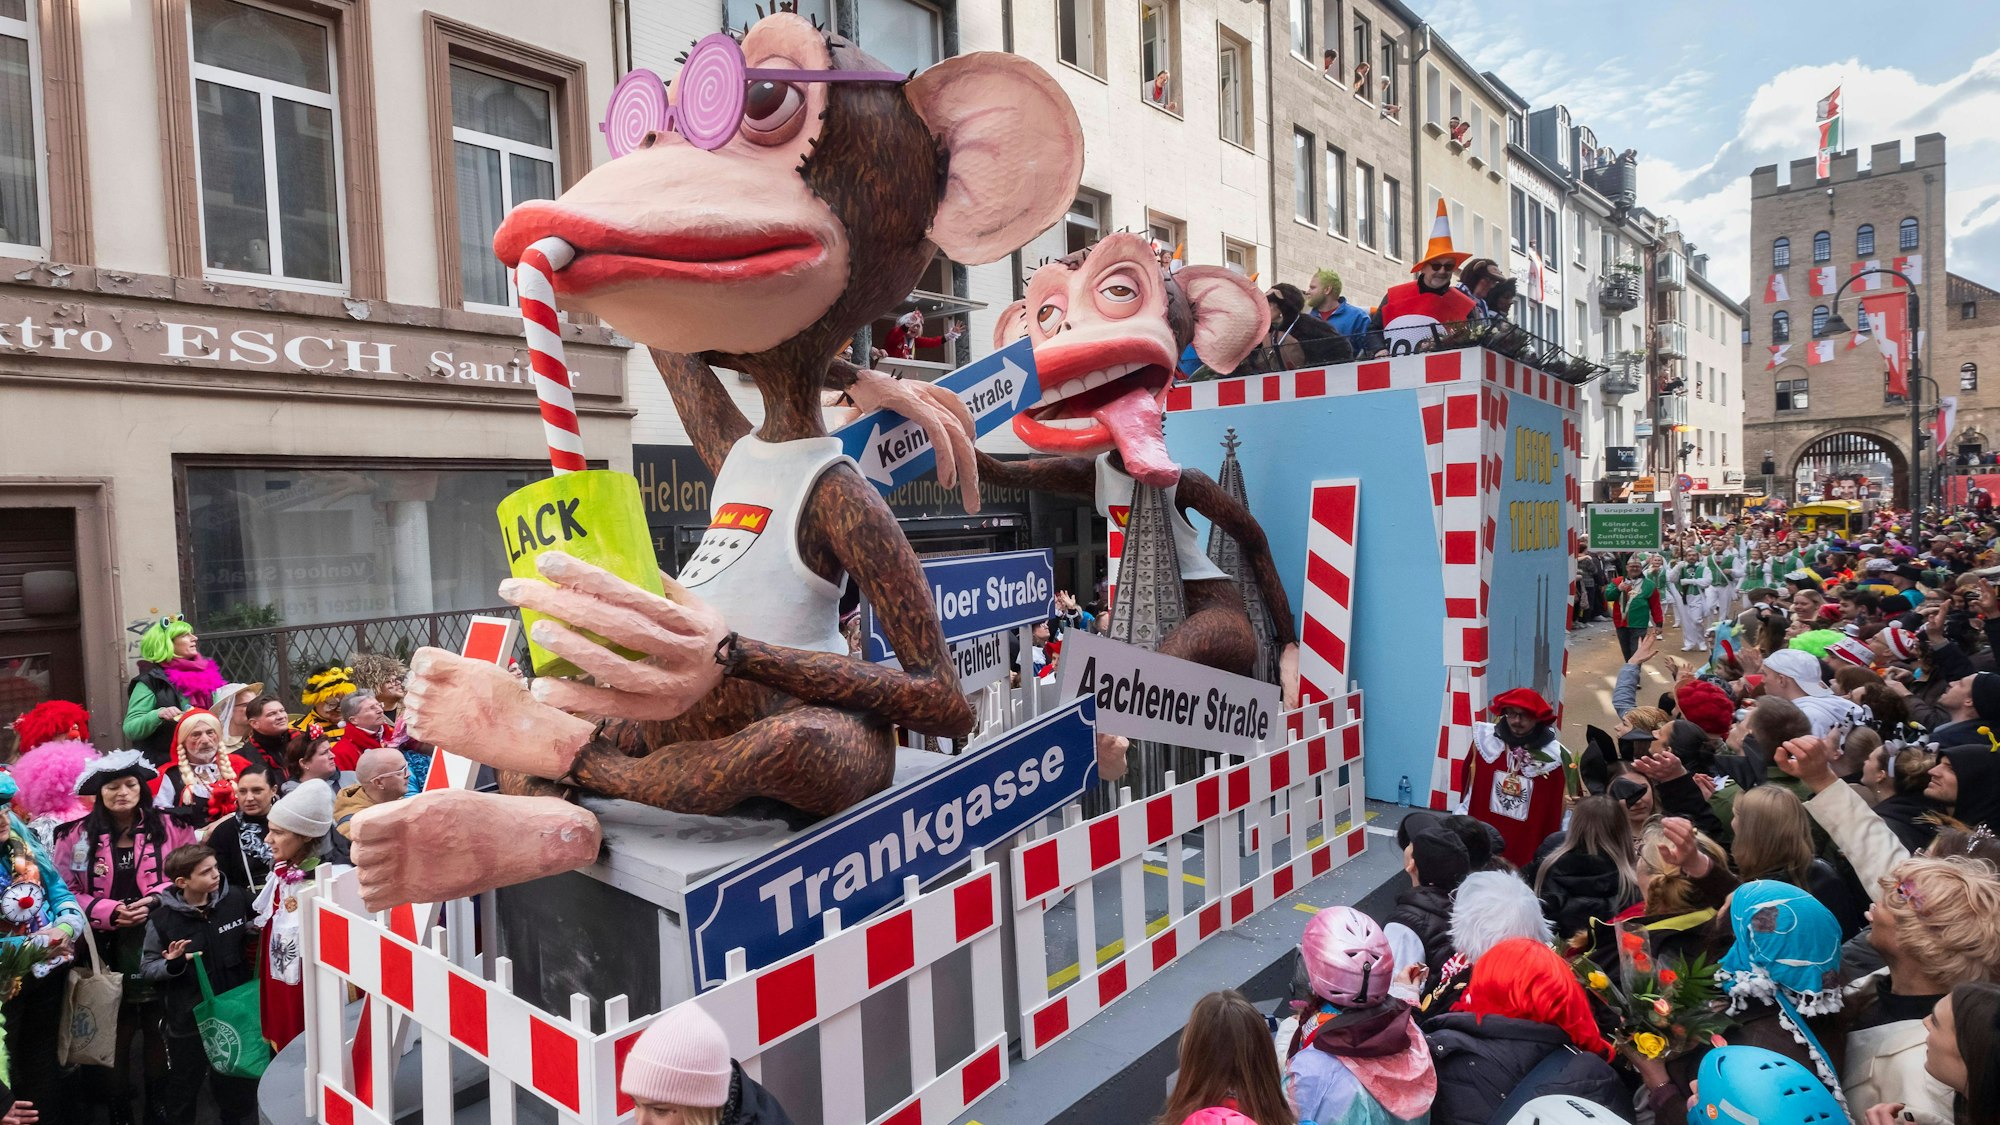 Wer sich in Köln fortbewegt, mag sich manchmal die Frage stellen, ob das Verkehrsdezernat eigentlich ein Affenhaus ist. Das zumindest behaupten die Macher dieses Wagens und greifen damit das anhaltende Verkehrs- und Baustellenchaos in der Stadt auf.